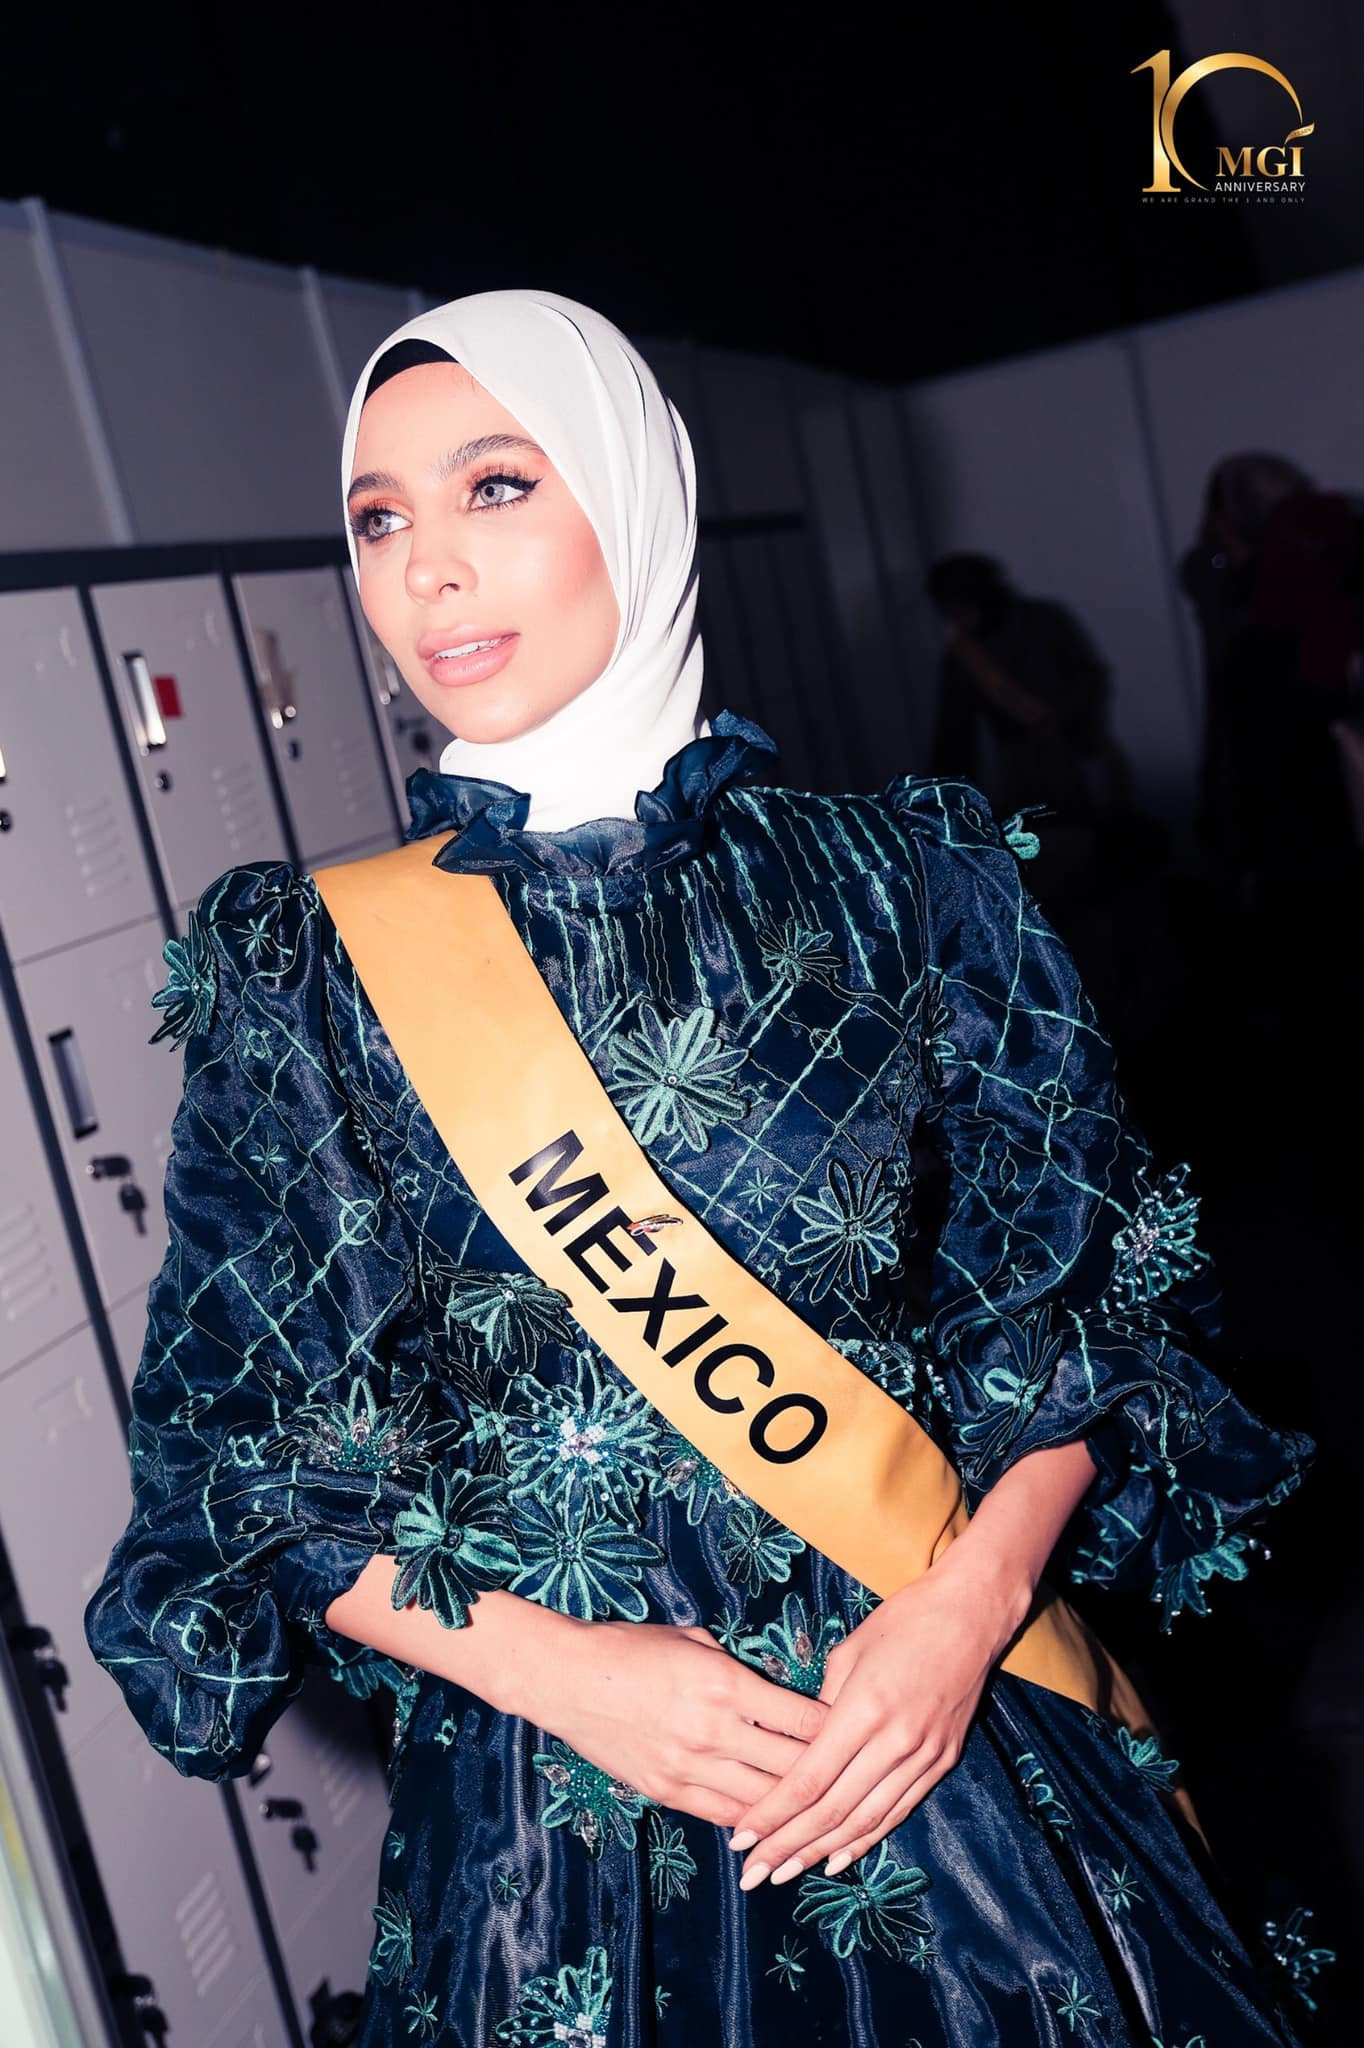 candidatas a miss grand international 2022 durante muslim fashion week. - Página 2 DH8eF2